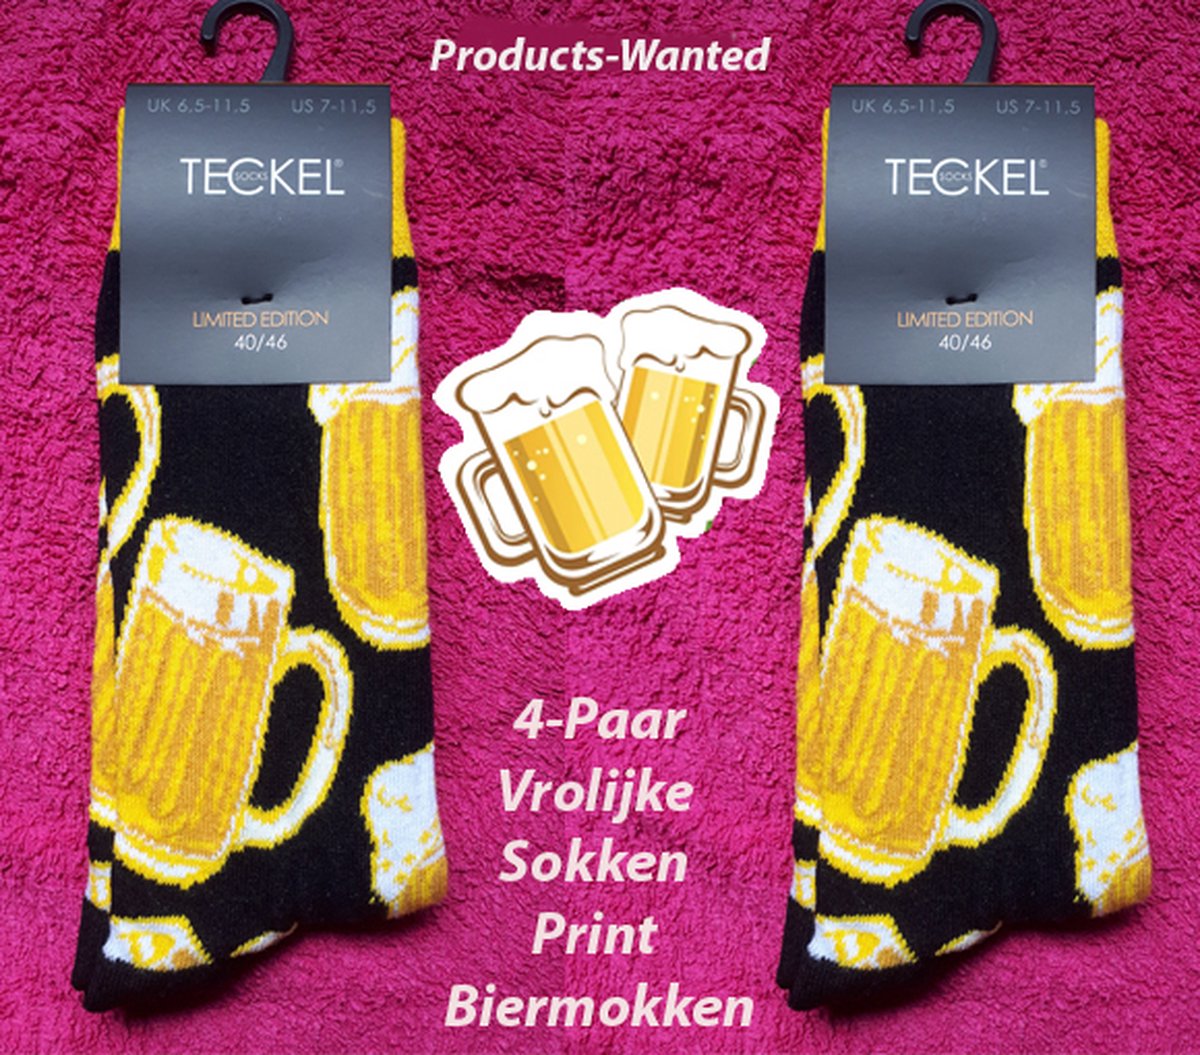 4-Paar Vrolijke Sokken Print Biermokken